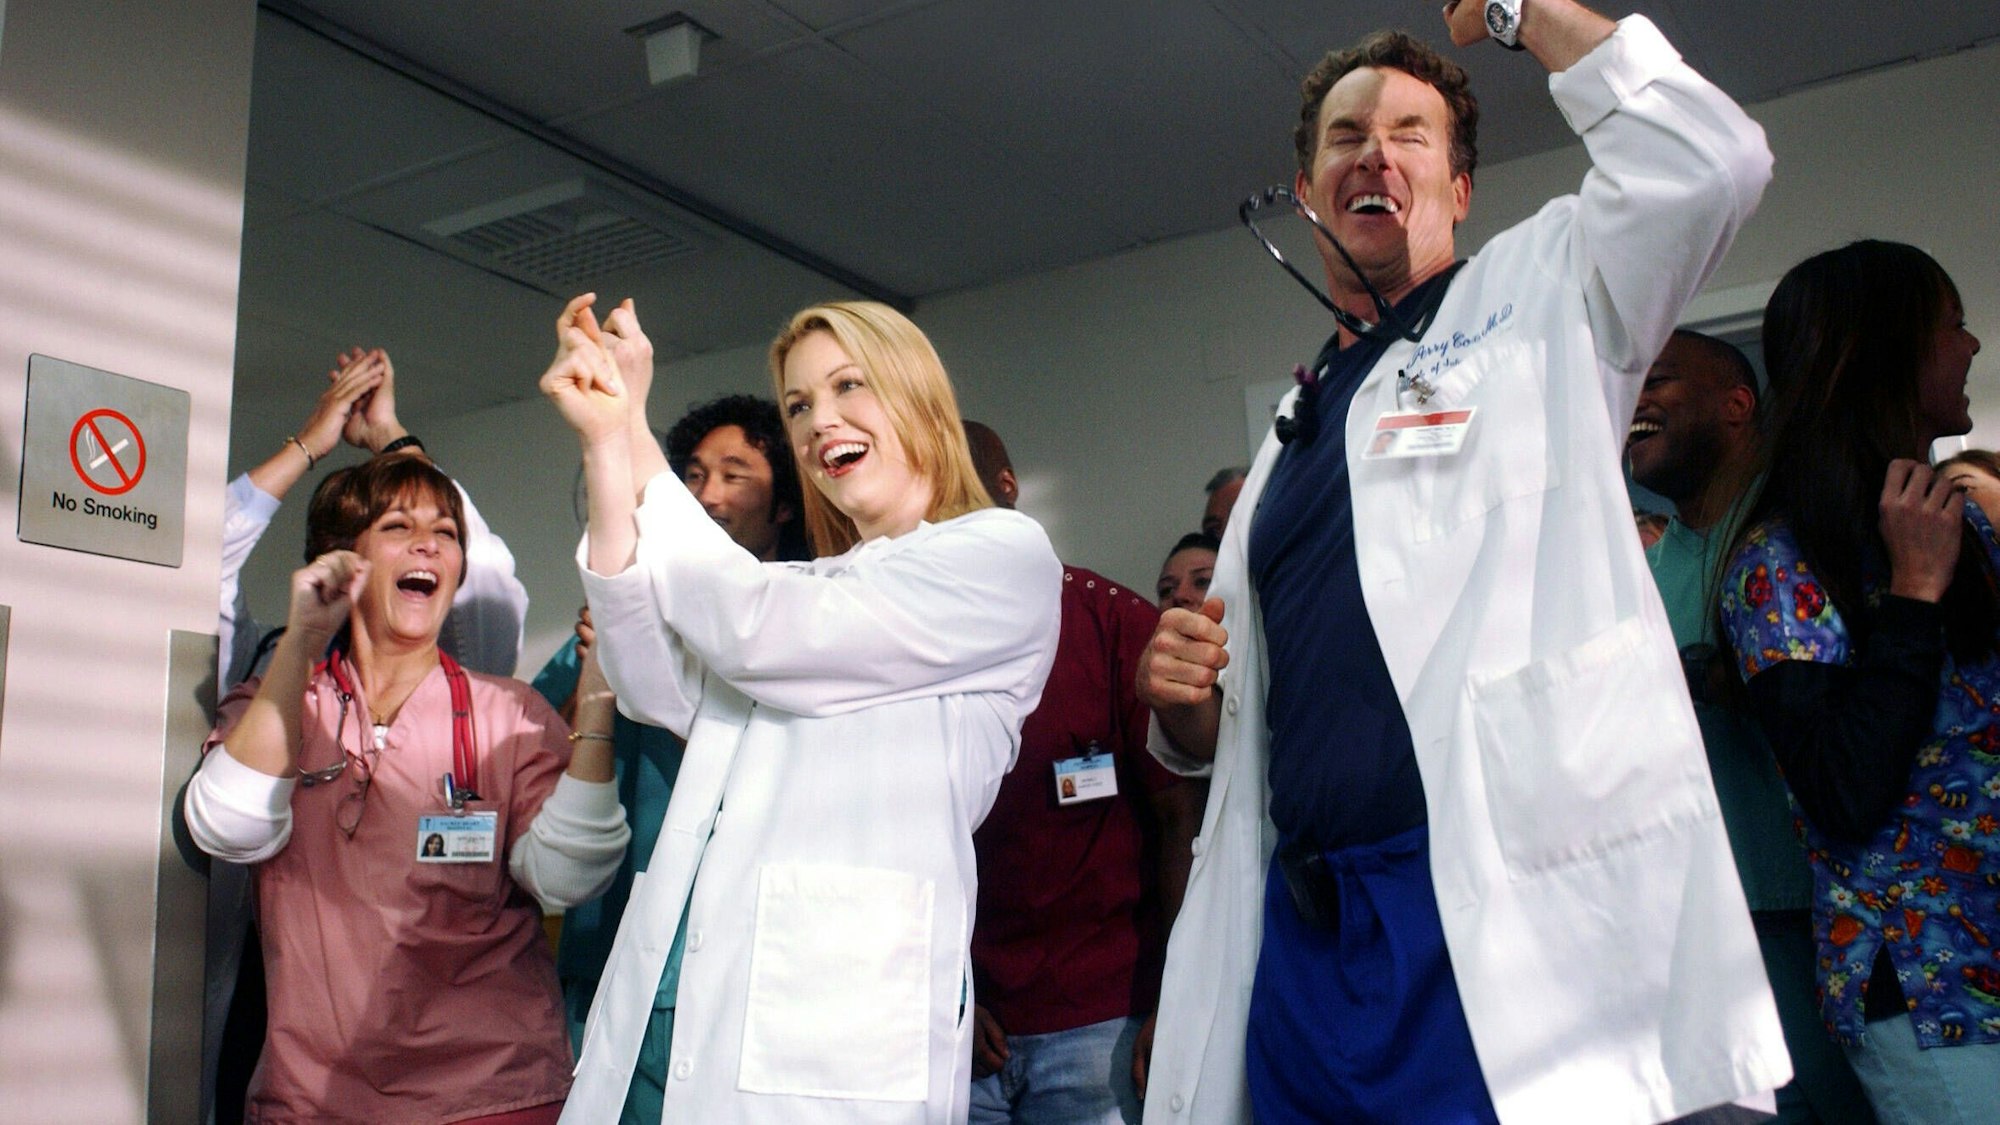 Szene aus Scrubs (19. Episode der dritten Staffel): John C. McGinley, der in der Ärzte-Comedy Chefarzt Perry Cox spielte, postete zusammen mit seinen Serien-Kolleginnen und -Kollegen ein gemeinsames Foto.